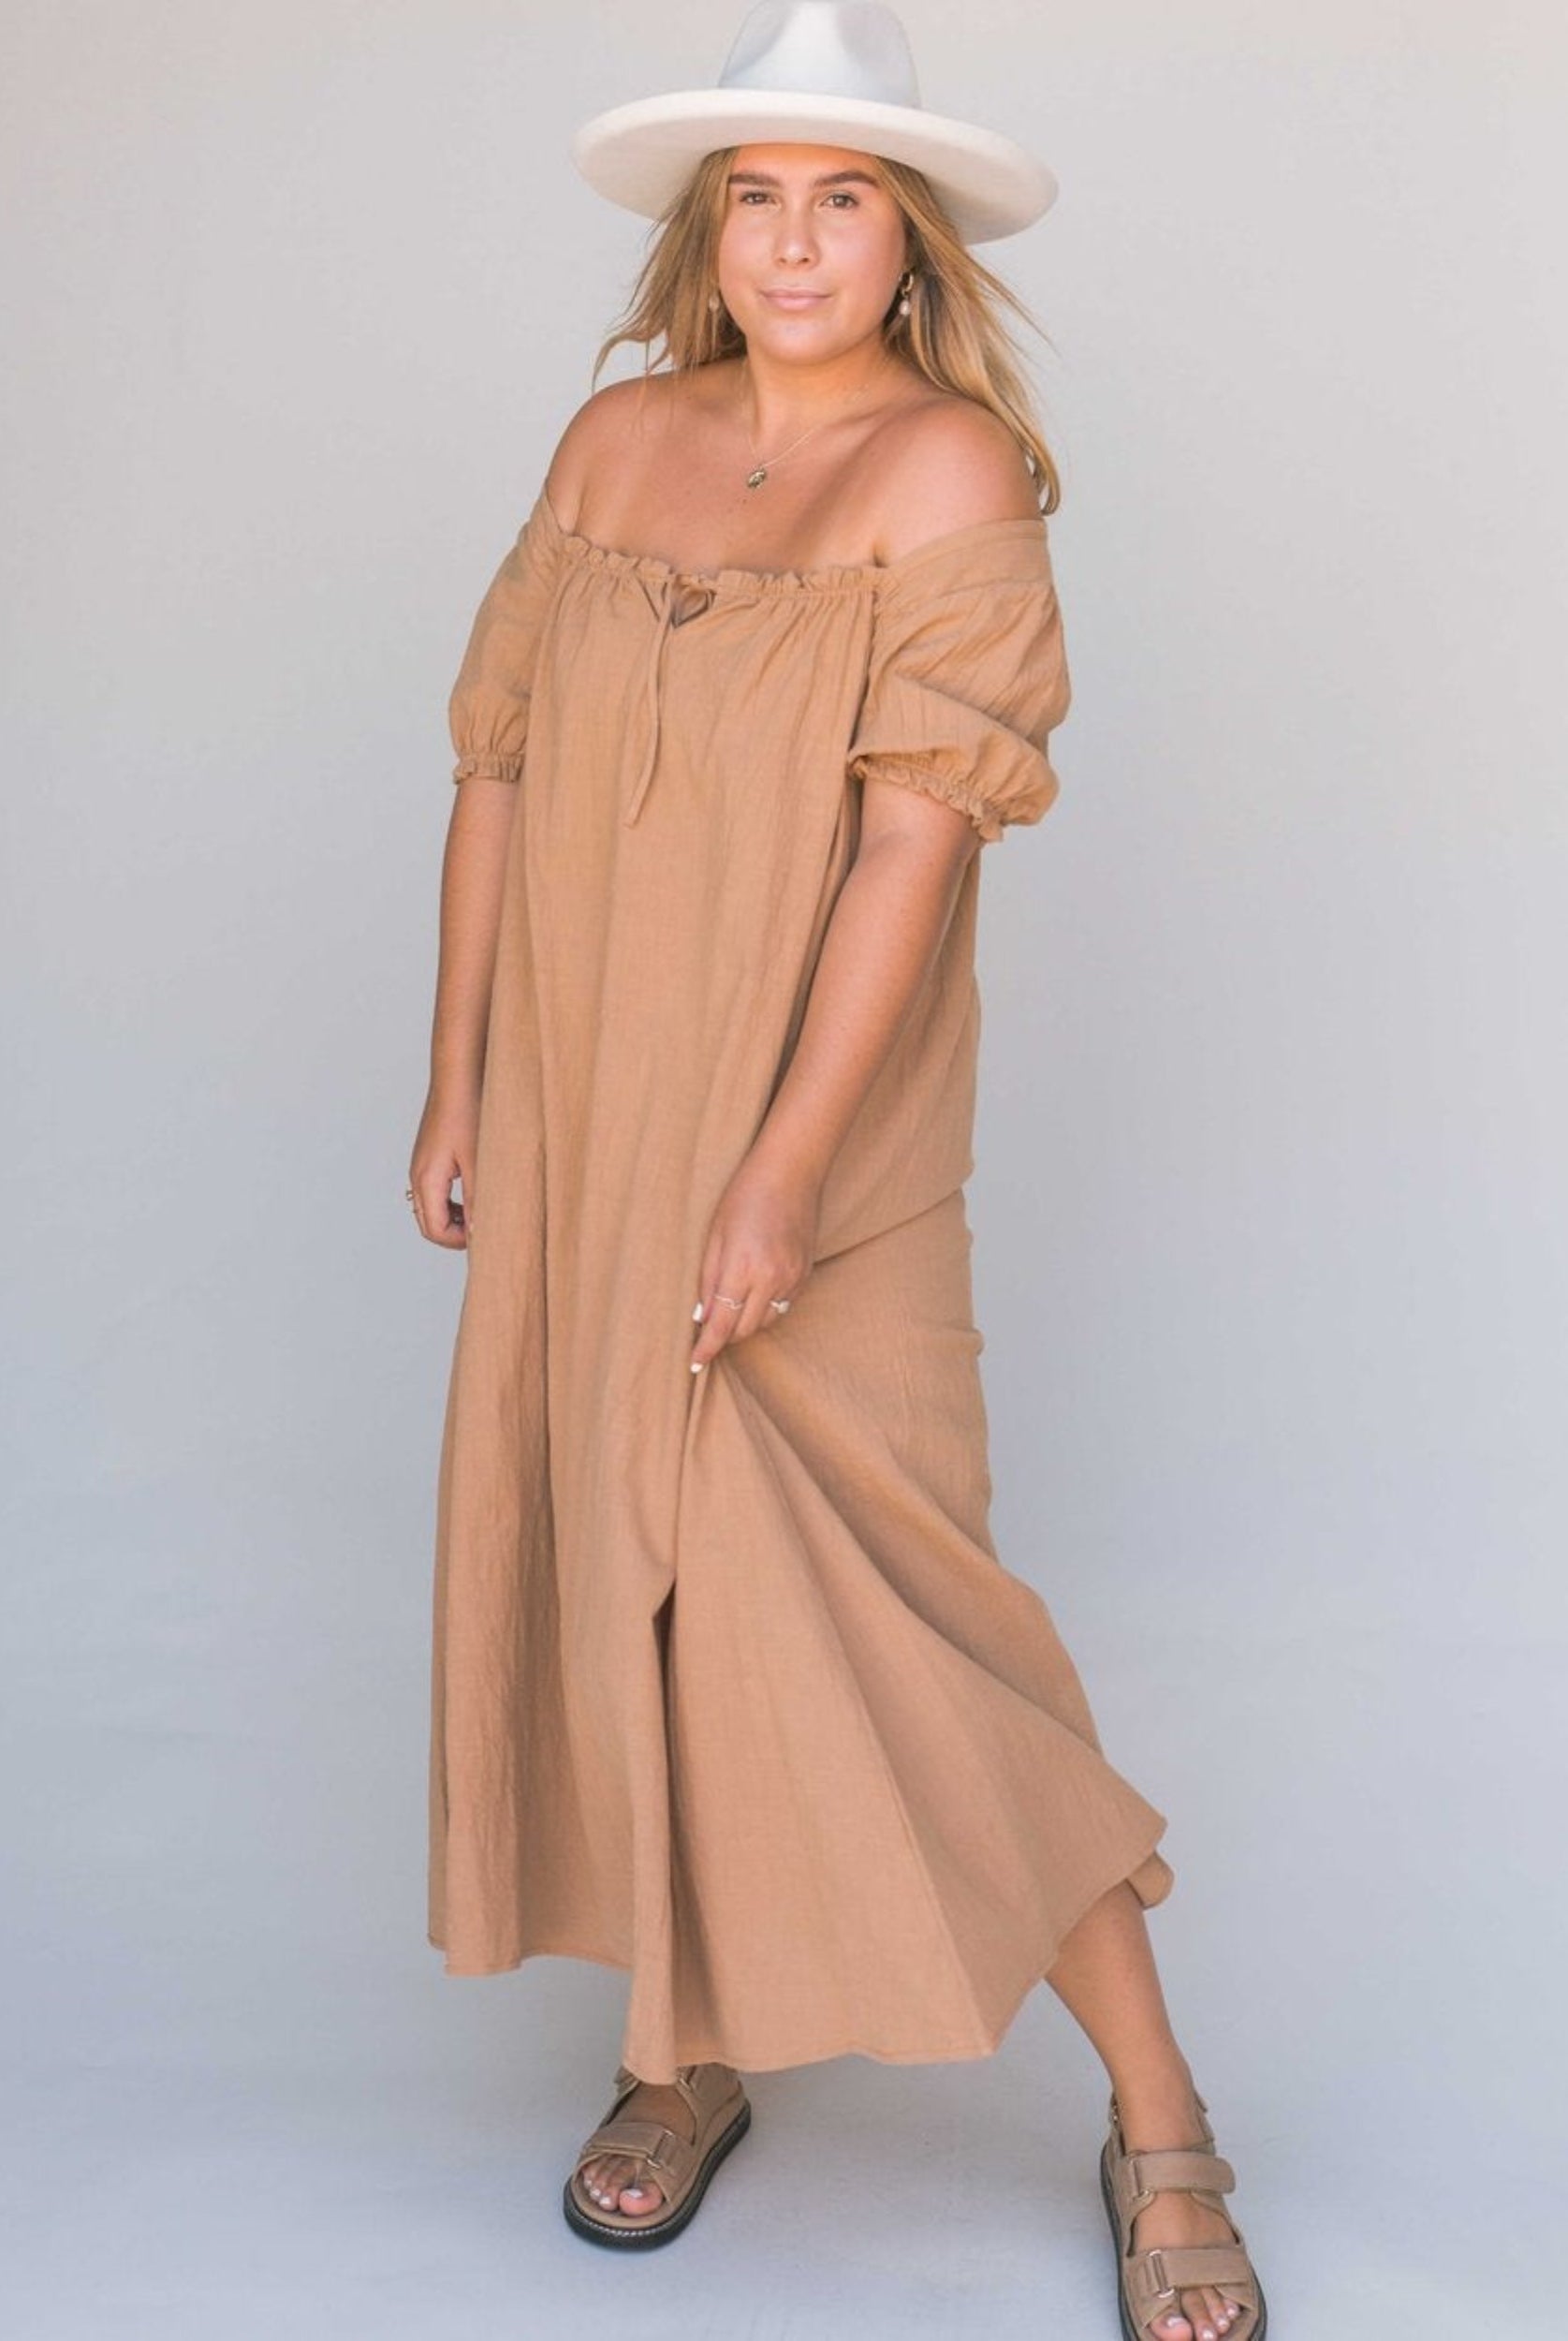 Model wearing beige midi dress